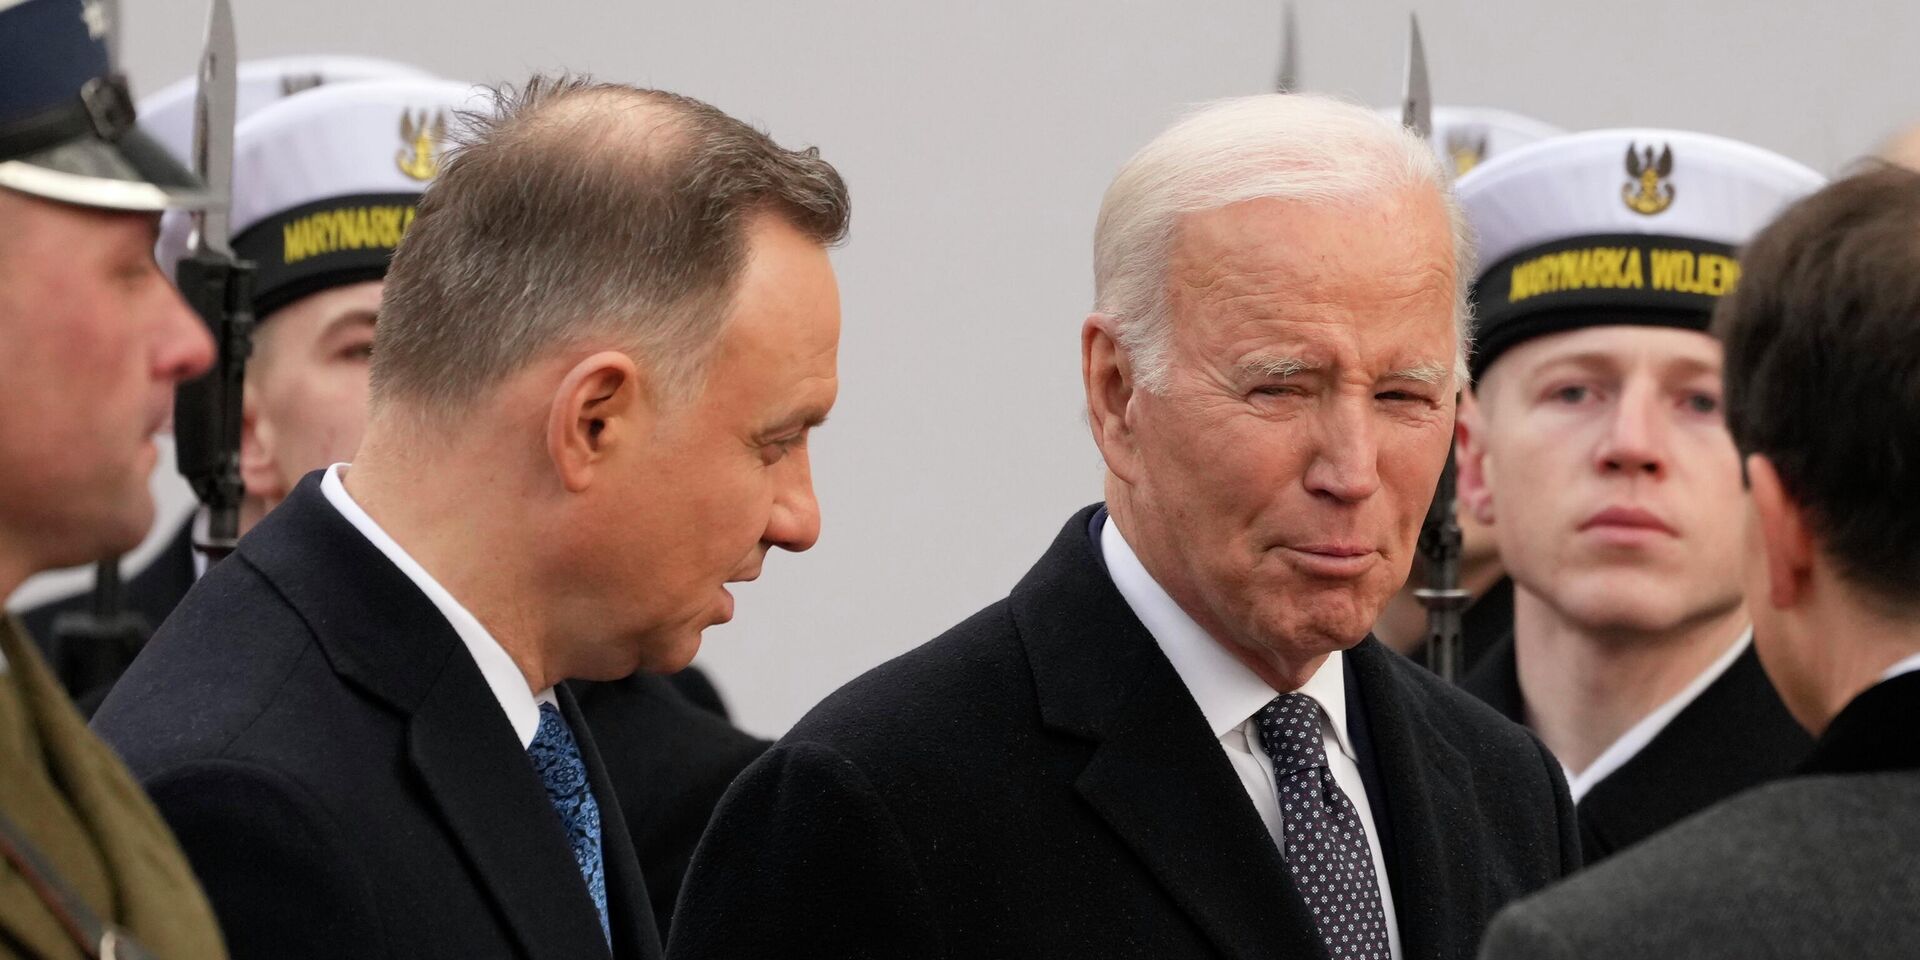 Президент Польши Анджей Дуда и президент США Джо Байден в Варшаве, Польша. 21 февраля 2023 года - ИноСМИ, 1920, 19.09.2023